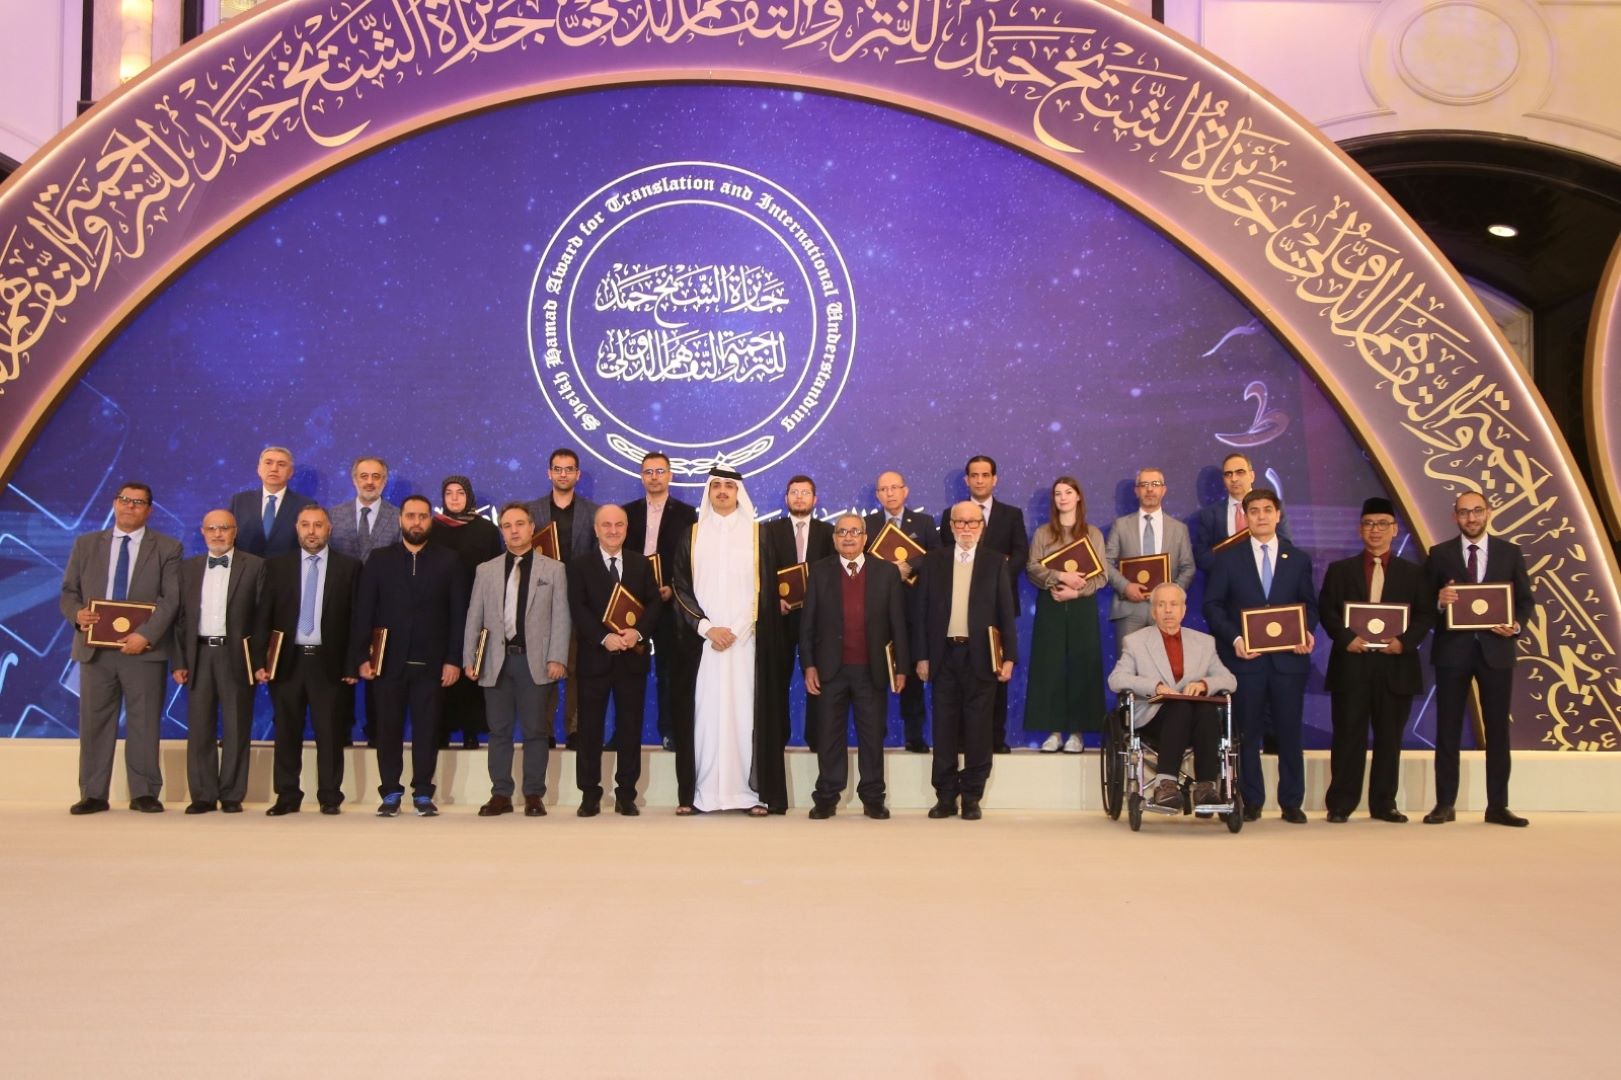 حفل تسليم جائزة الشيخ حمد للترجمة - دورة 2022